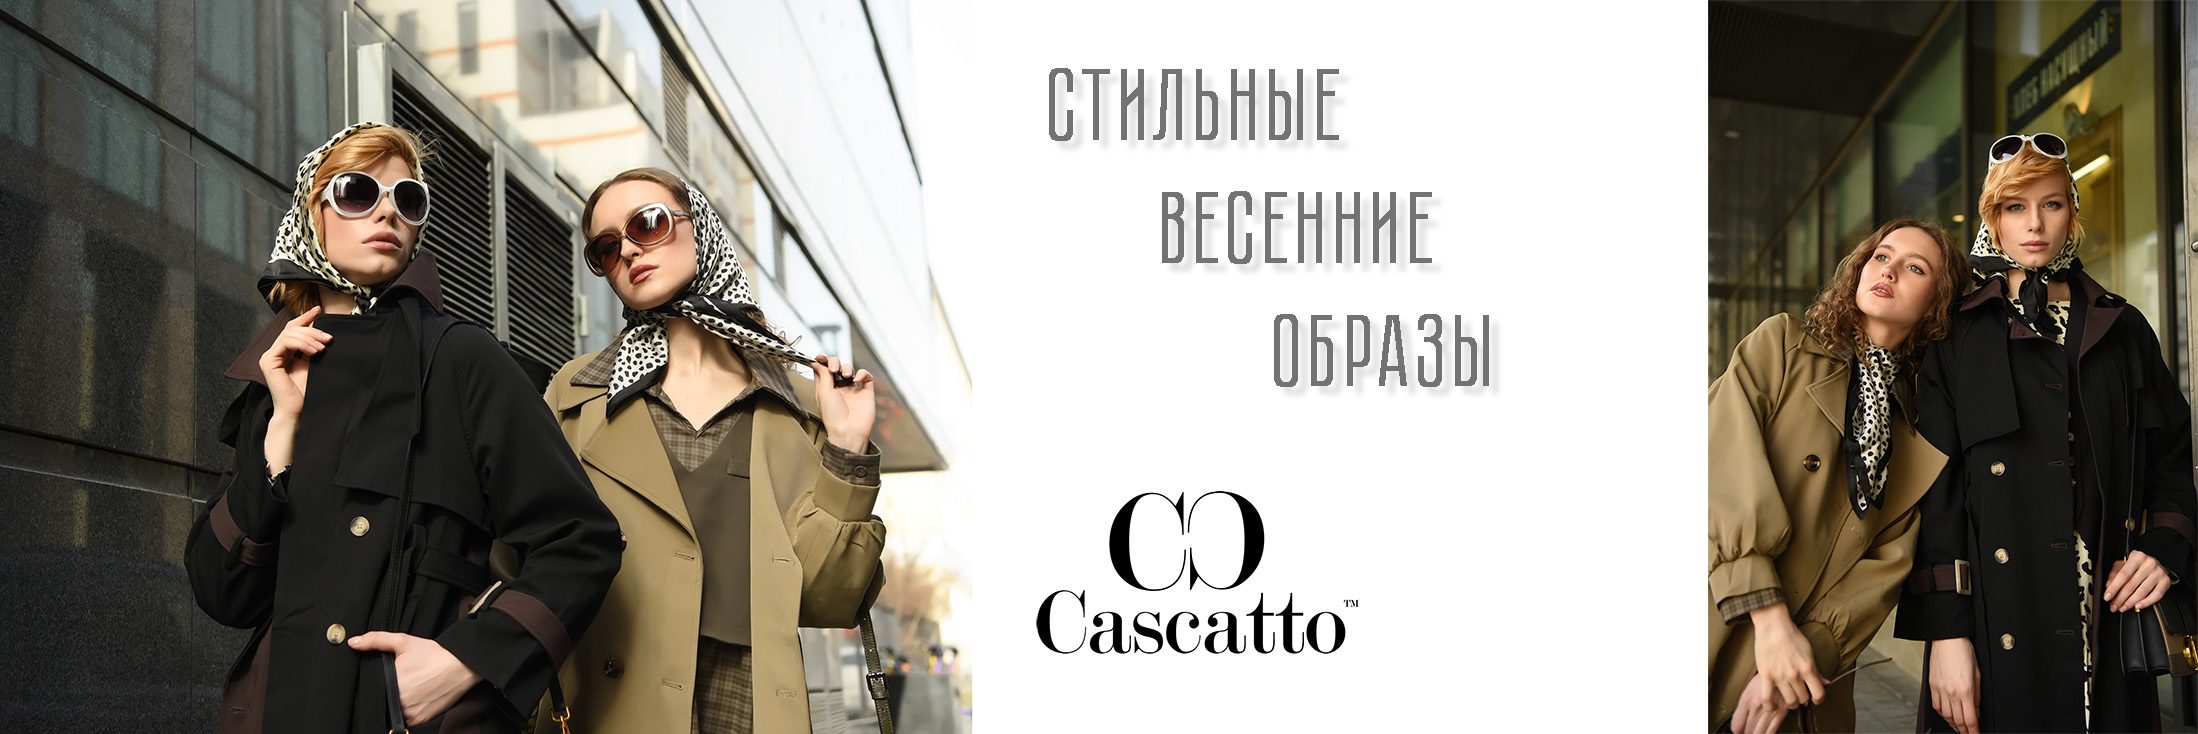 Предложение Cascatto.ru